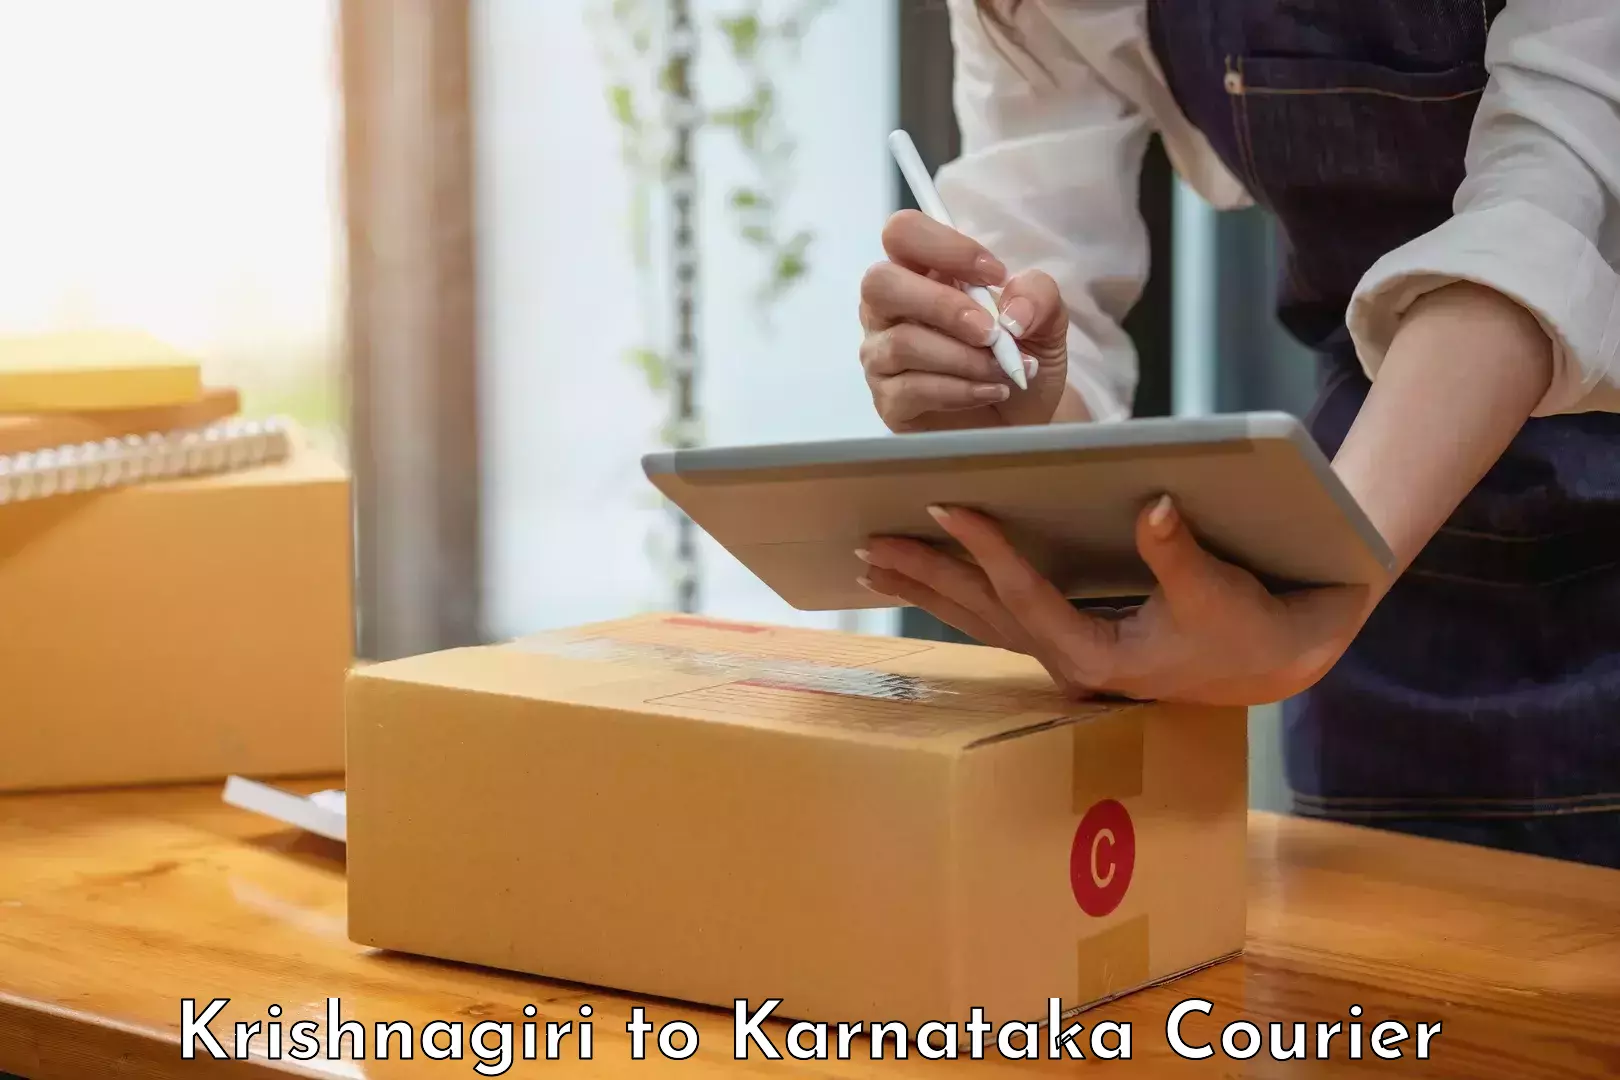 Customer-centric shipping Krishnagiri to Mudigere